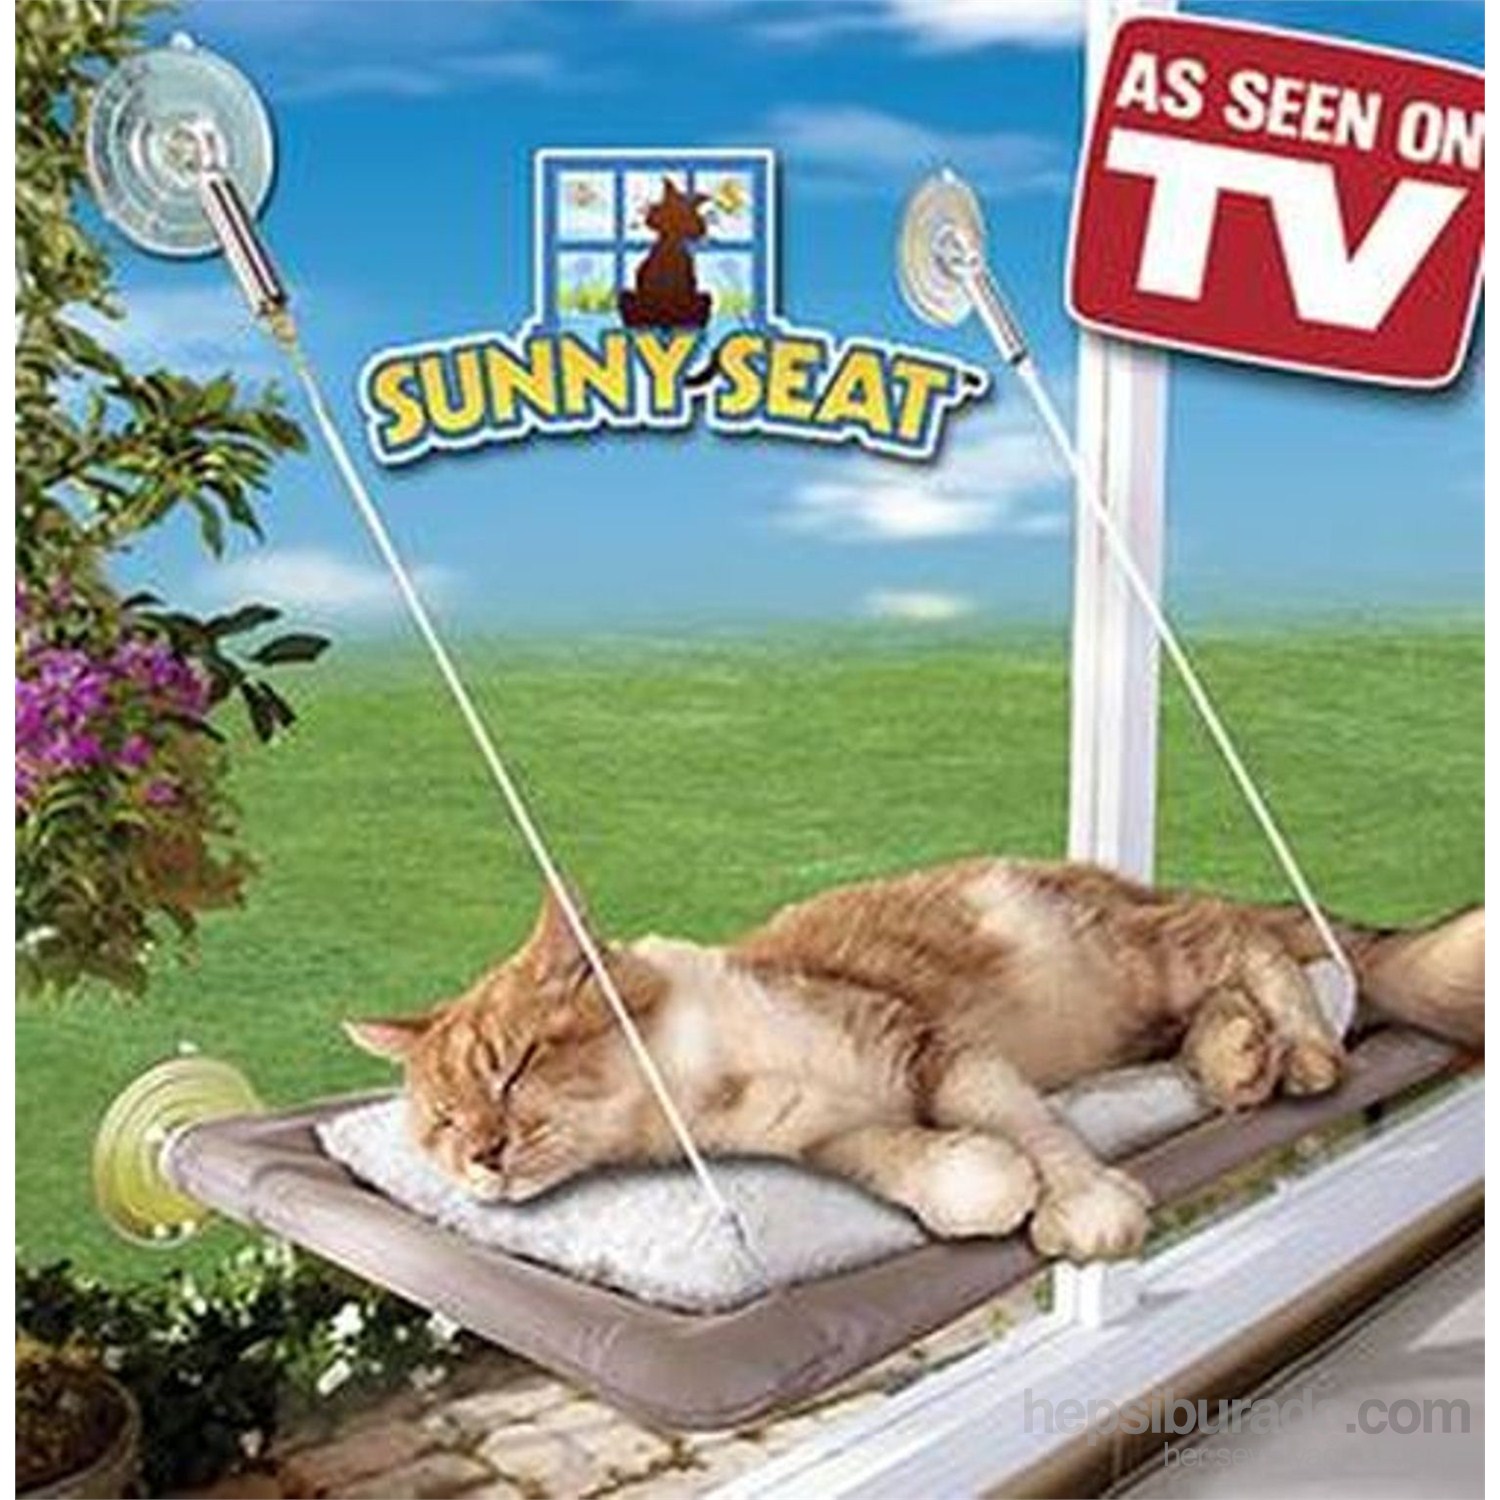 Sunny Seat Cama Yapışan Kedi Yatağı Fiyatı Taksit Seçenekleri